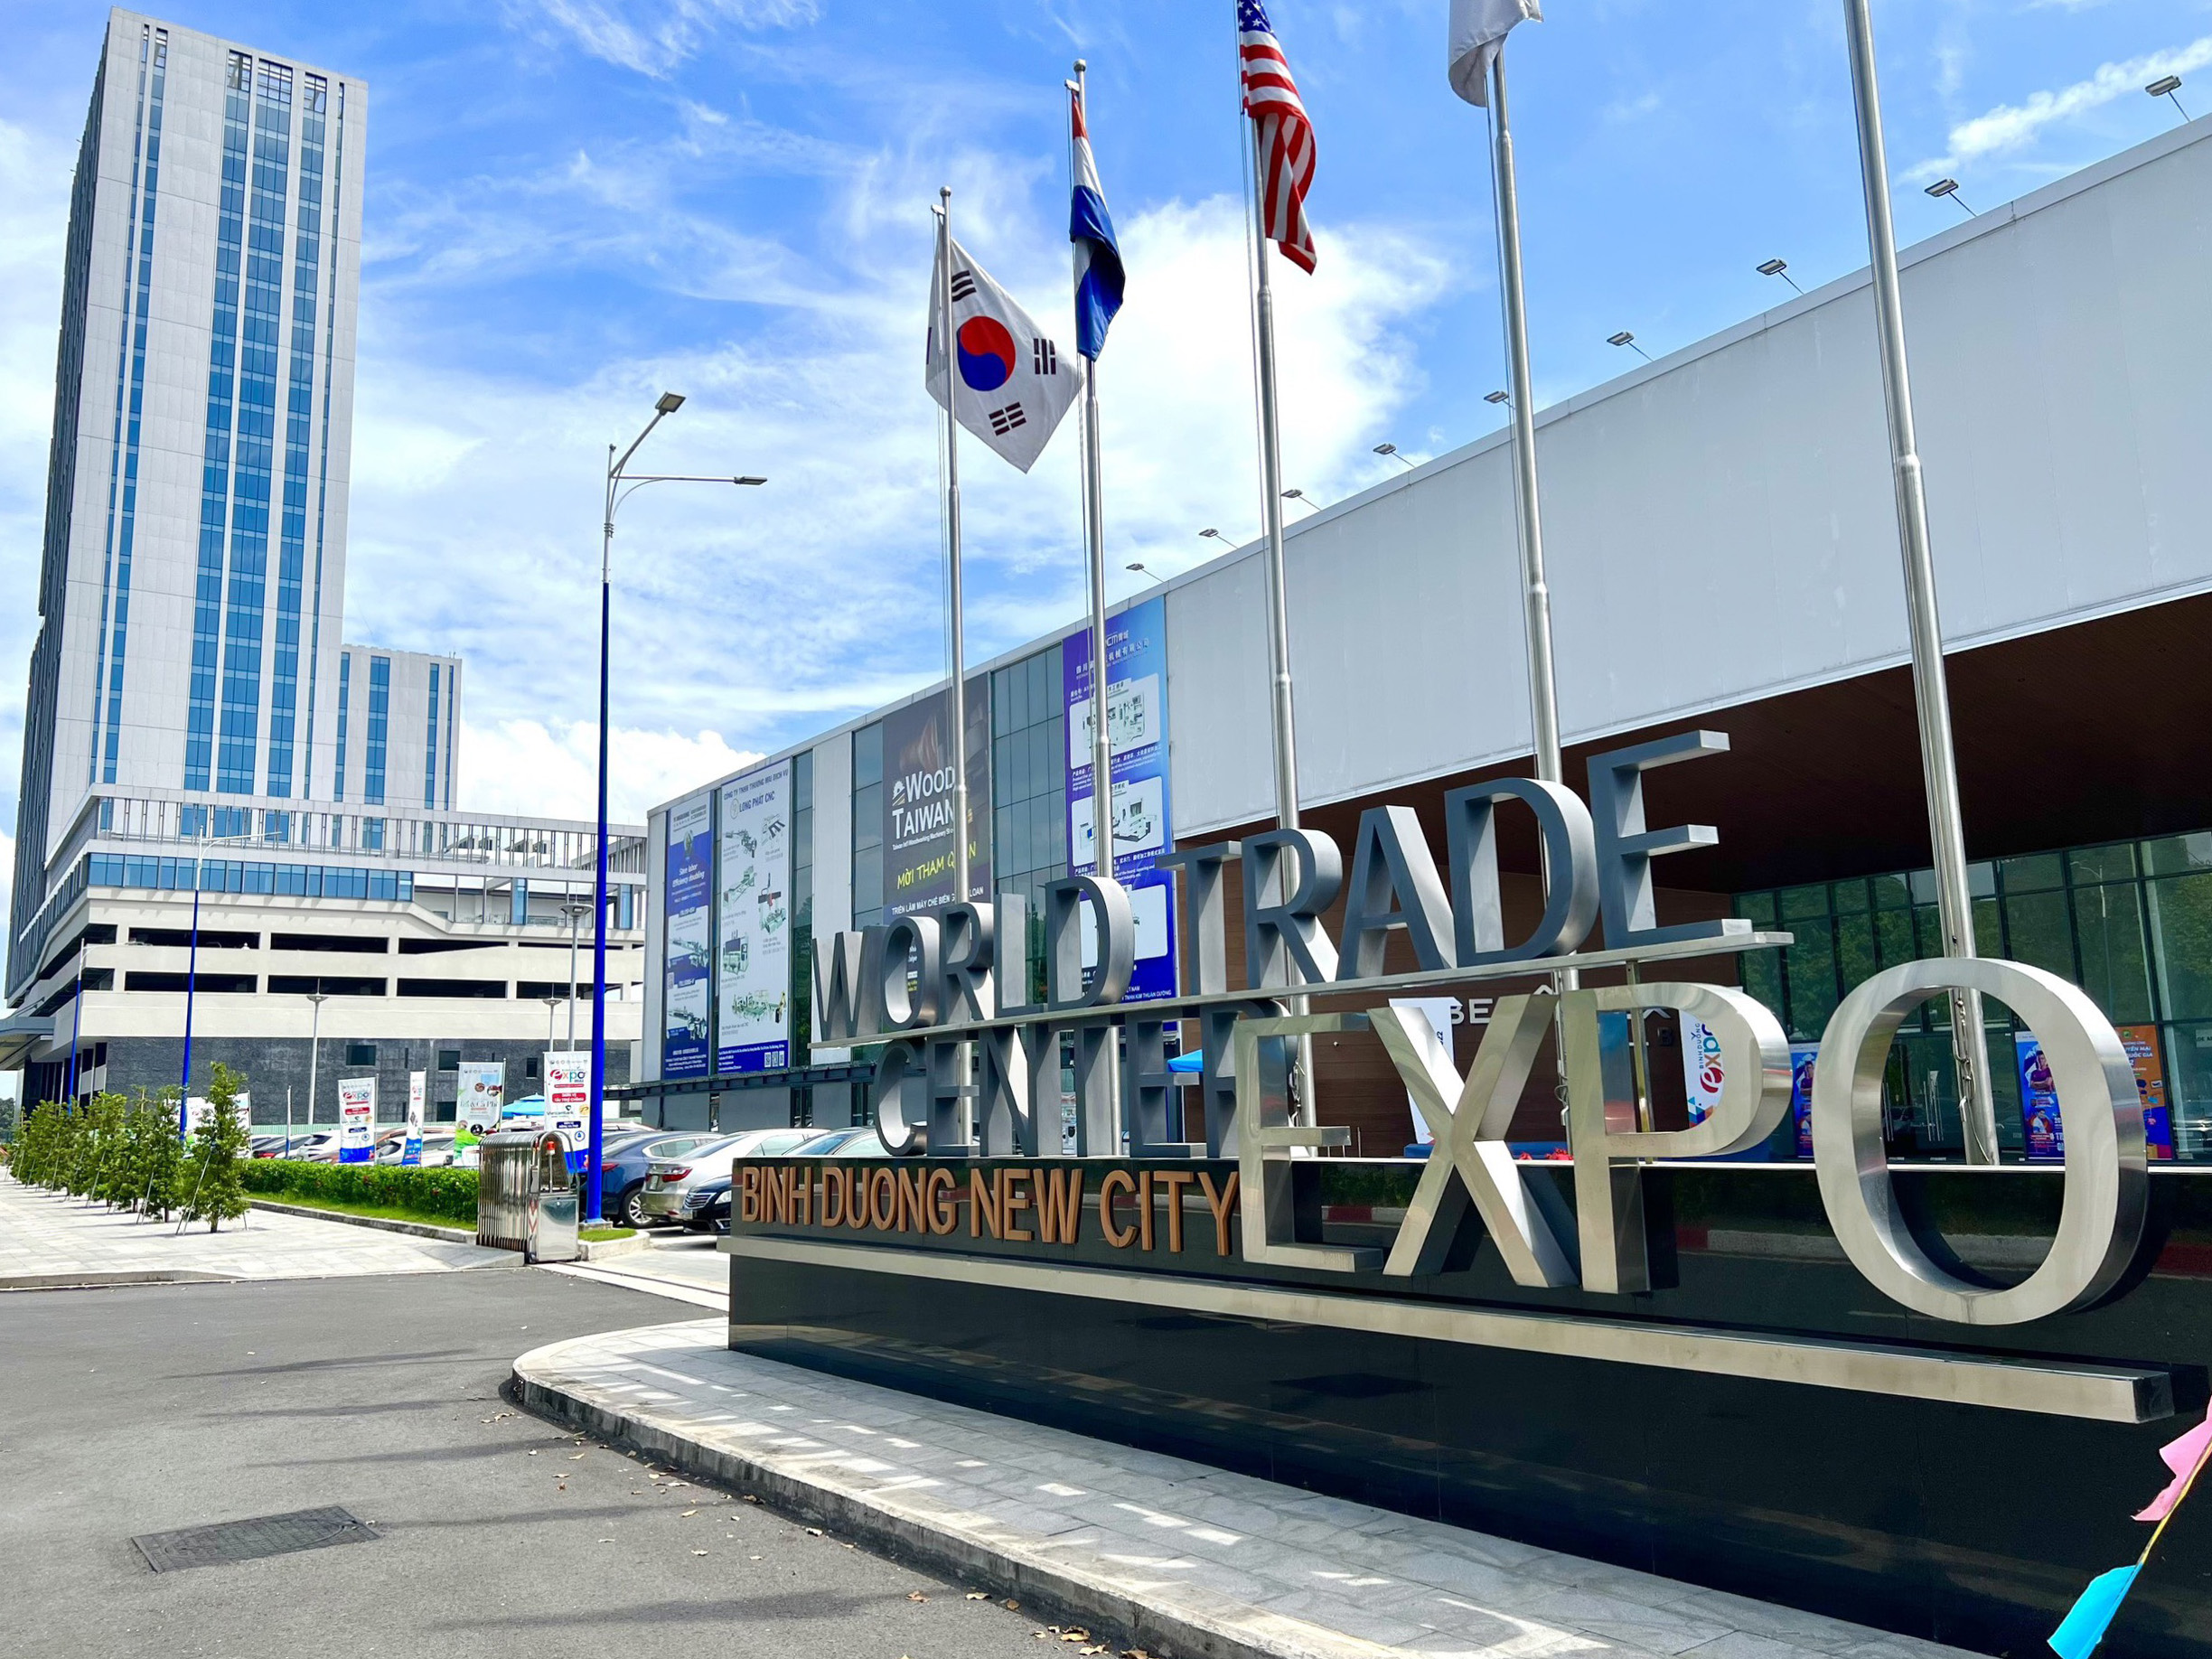 Trung tâm Triển lãm Quốc tế Thành phố mới Bình Dương (WTC Expo), nơi tổ chức nhiều hoạt động hưởng ứng Chương trình “Tháng khuyến mãi tập trung Quốc gia – Vietnam Grand Sale 2022”.